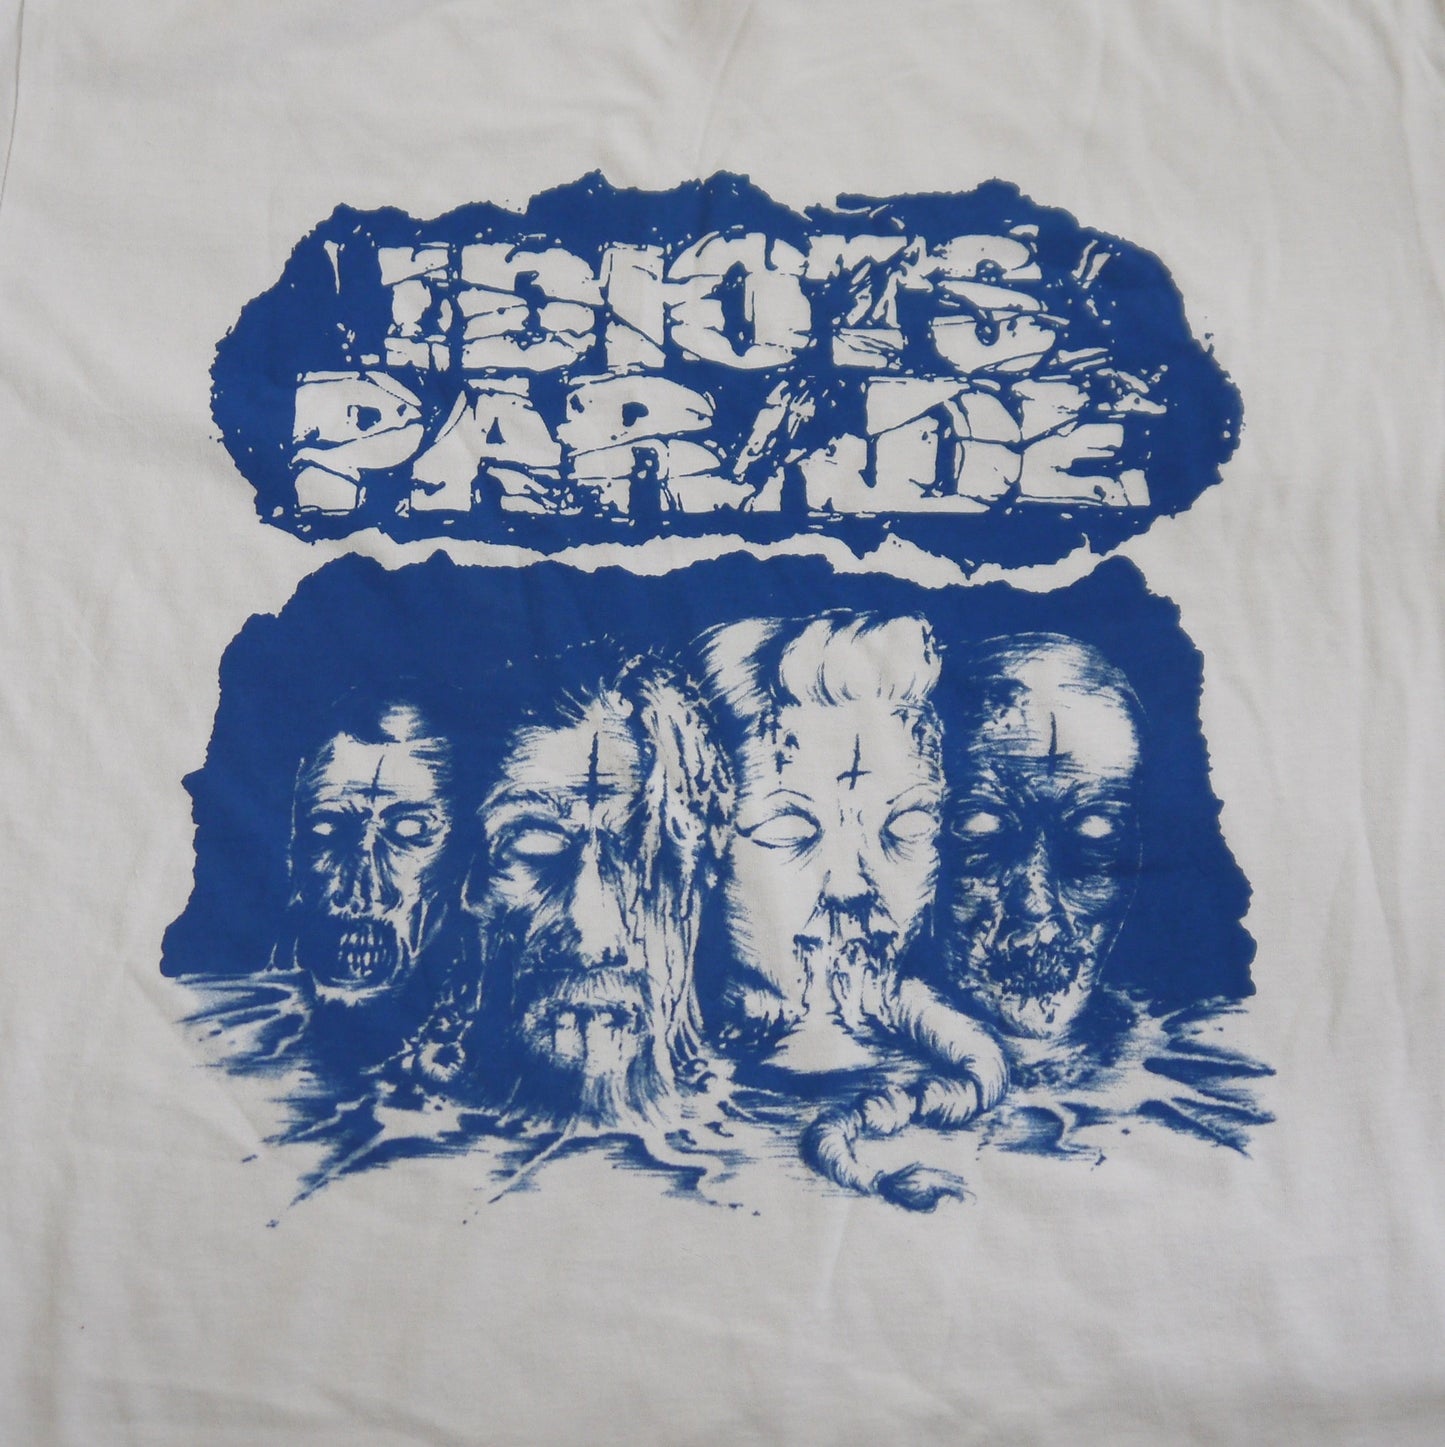 IDIOTS PARADE - T-shirt